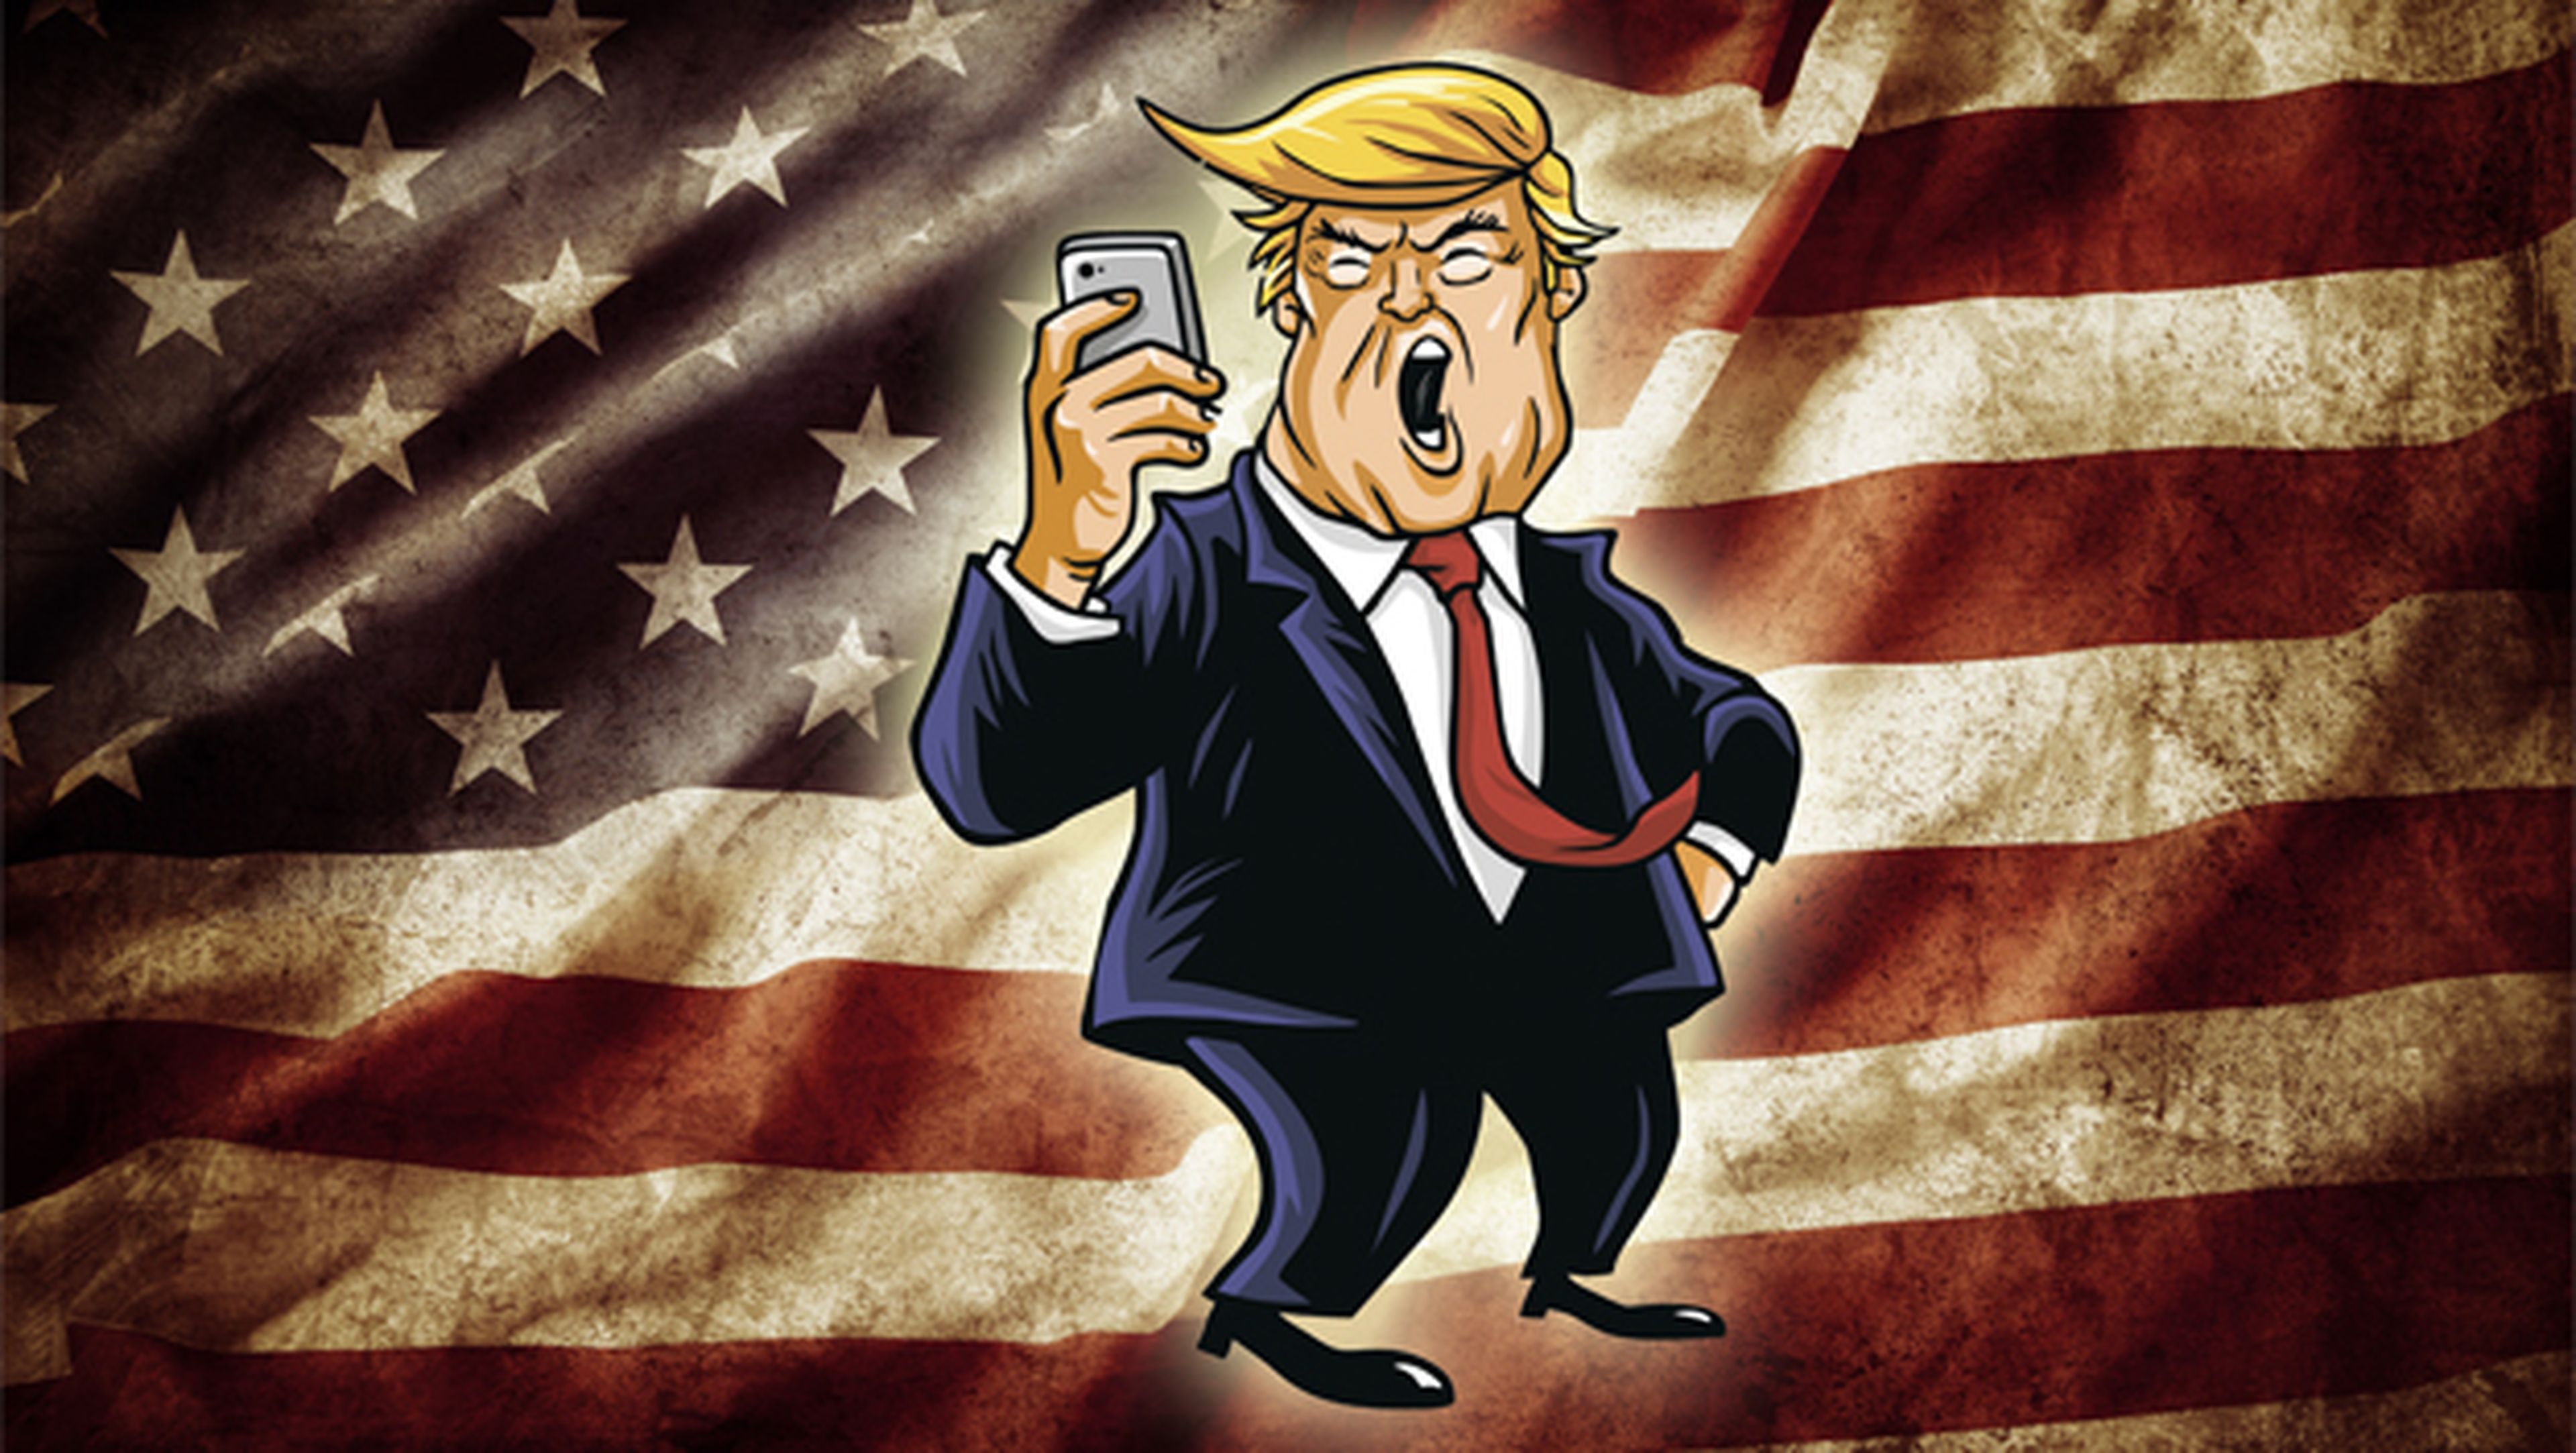 Donald Trump utiliza un móvil Android viejo e inseguro